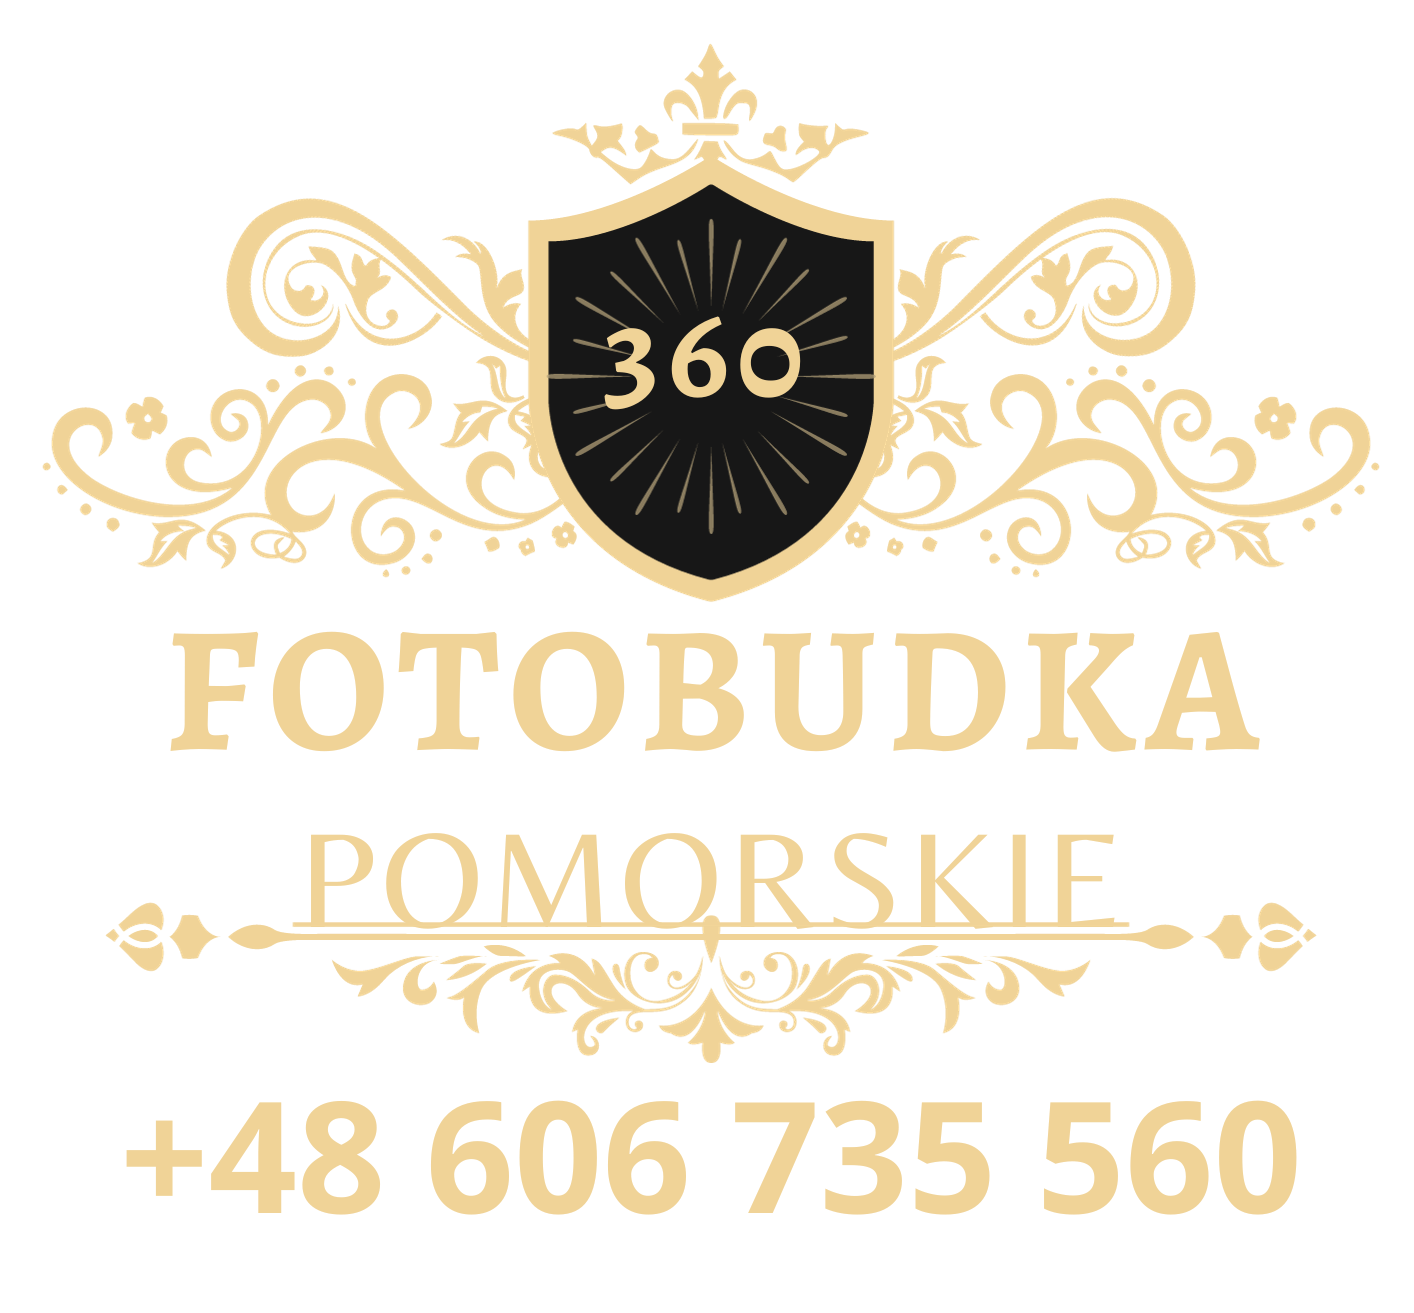 FotoBudka360 Pomorskie